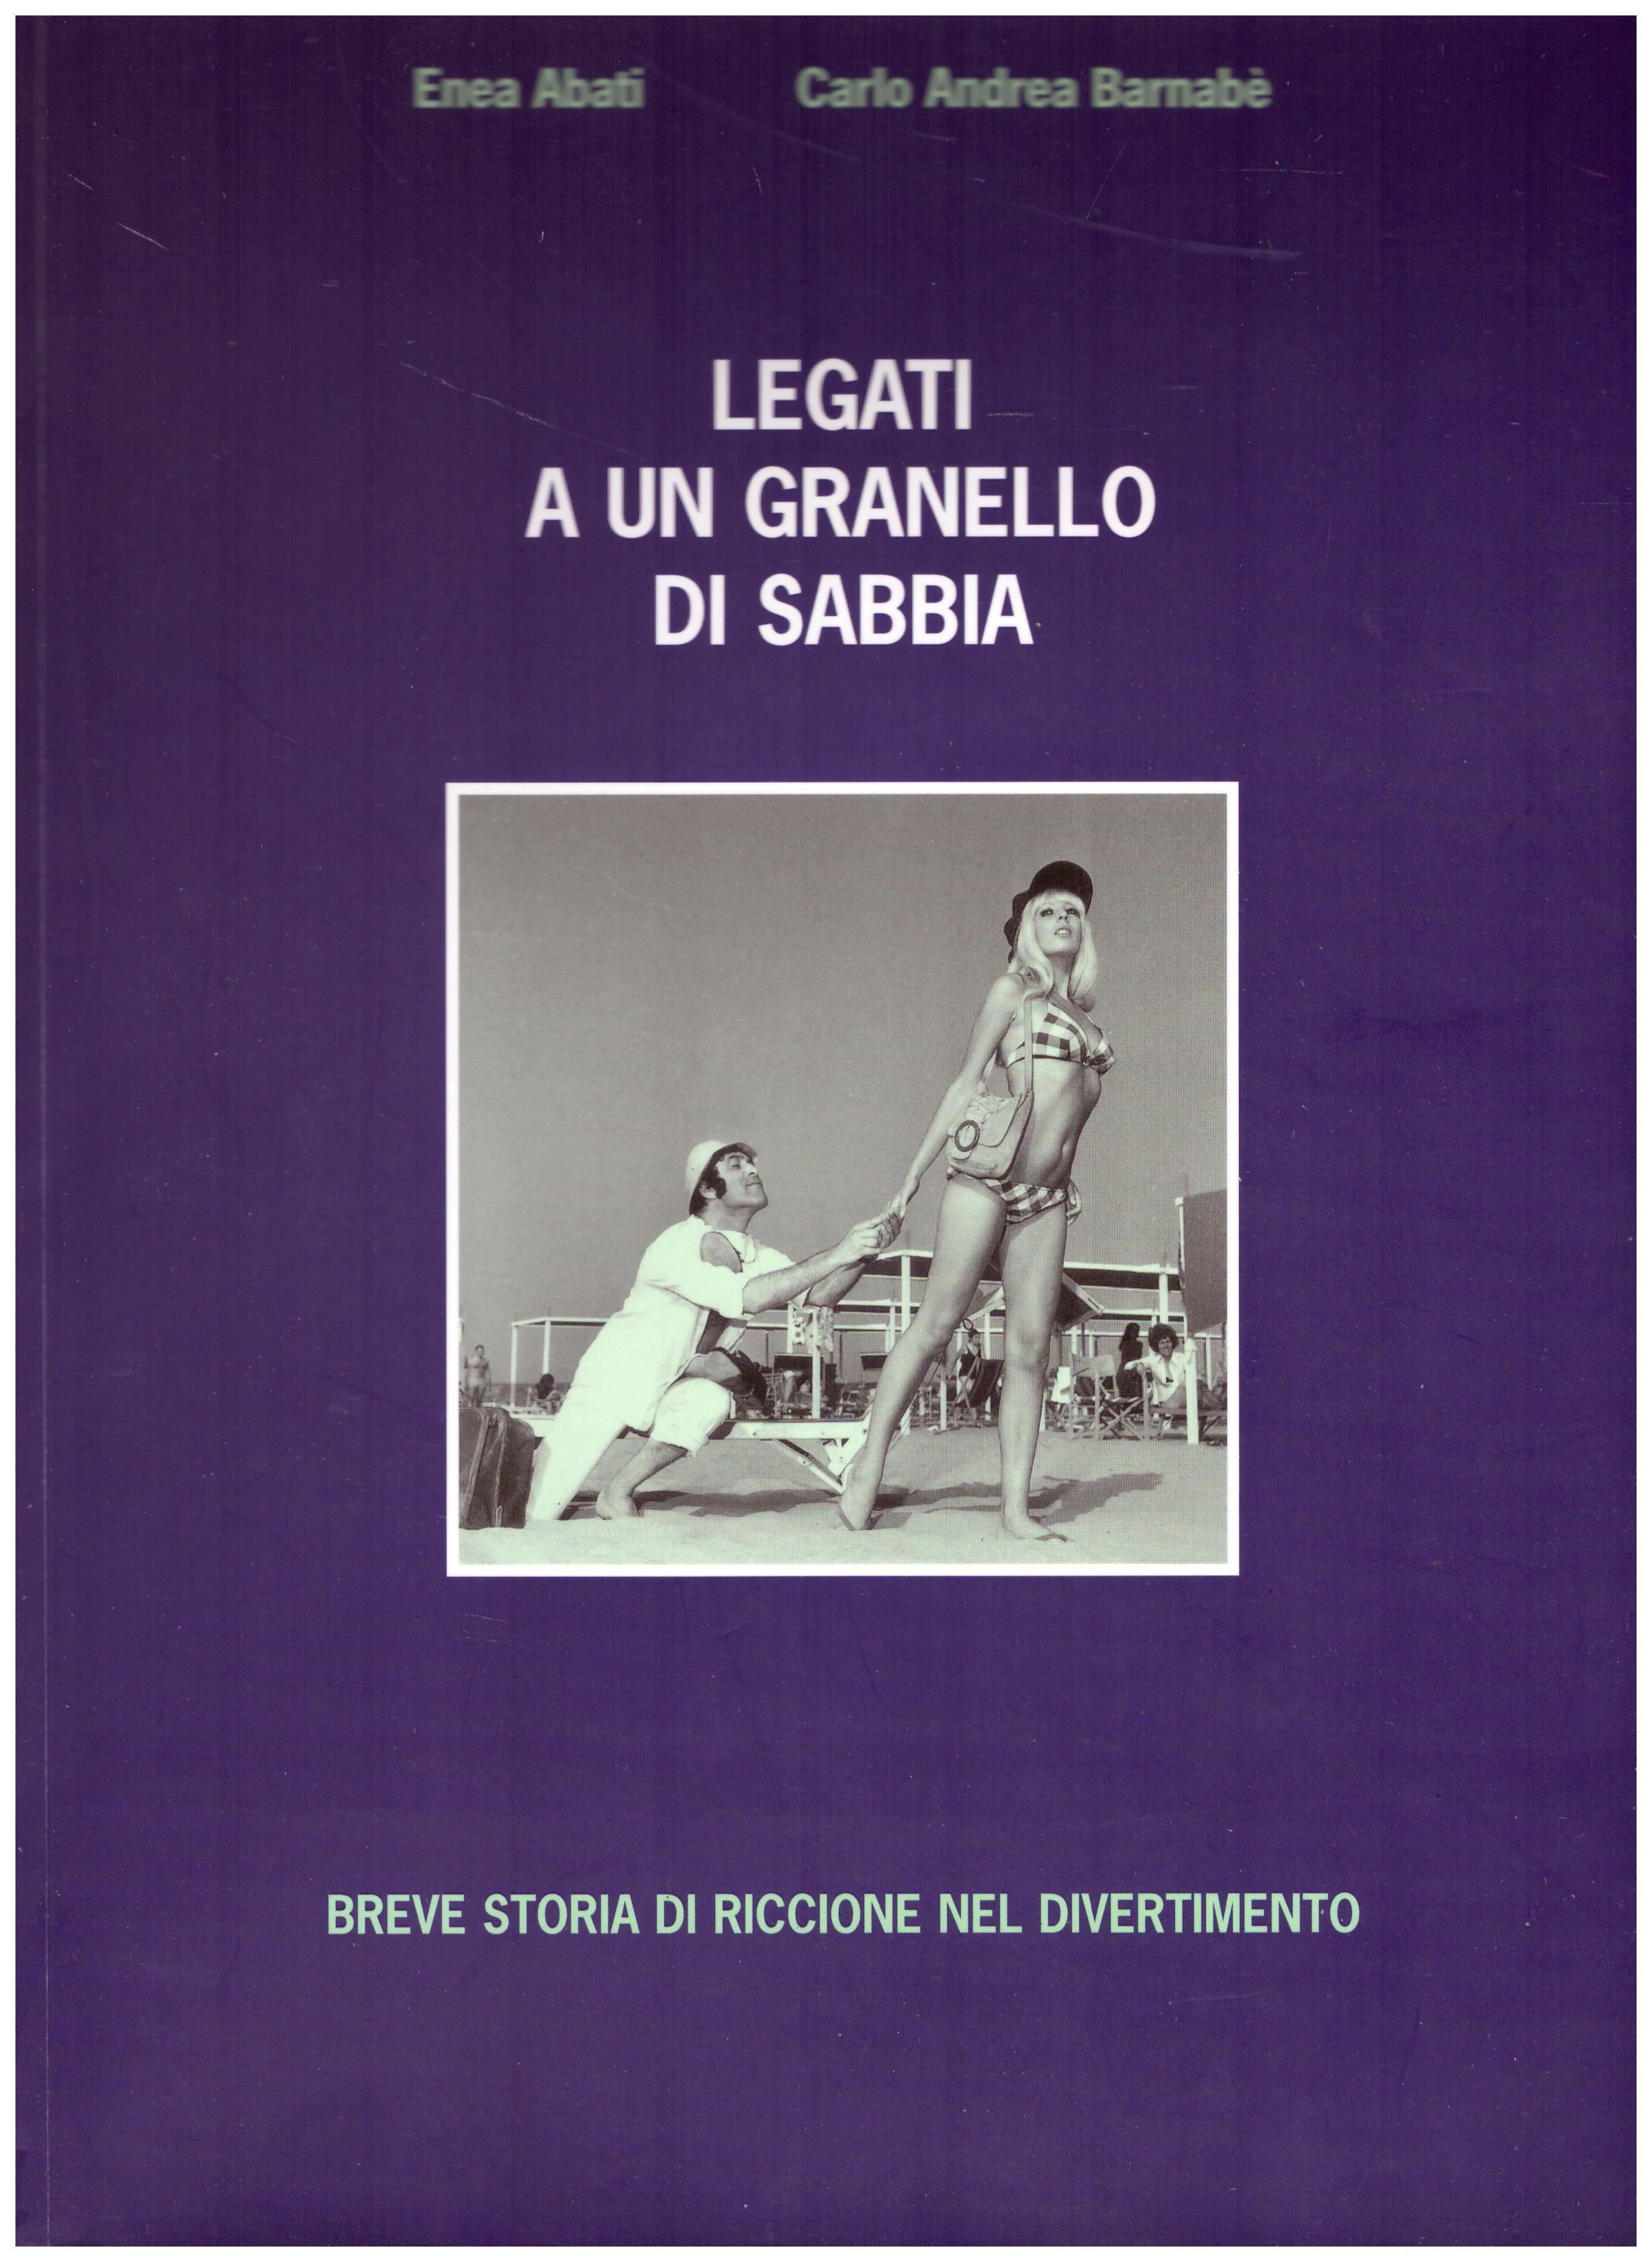 Titolo: Legati a un granello di sabbia  Autore: Enea Abati, Carlo Andrea Barnabè  Editore: Lithos arti grafiche, 2004